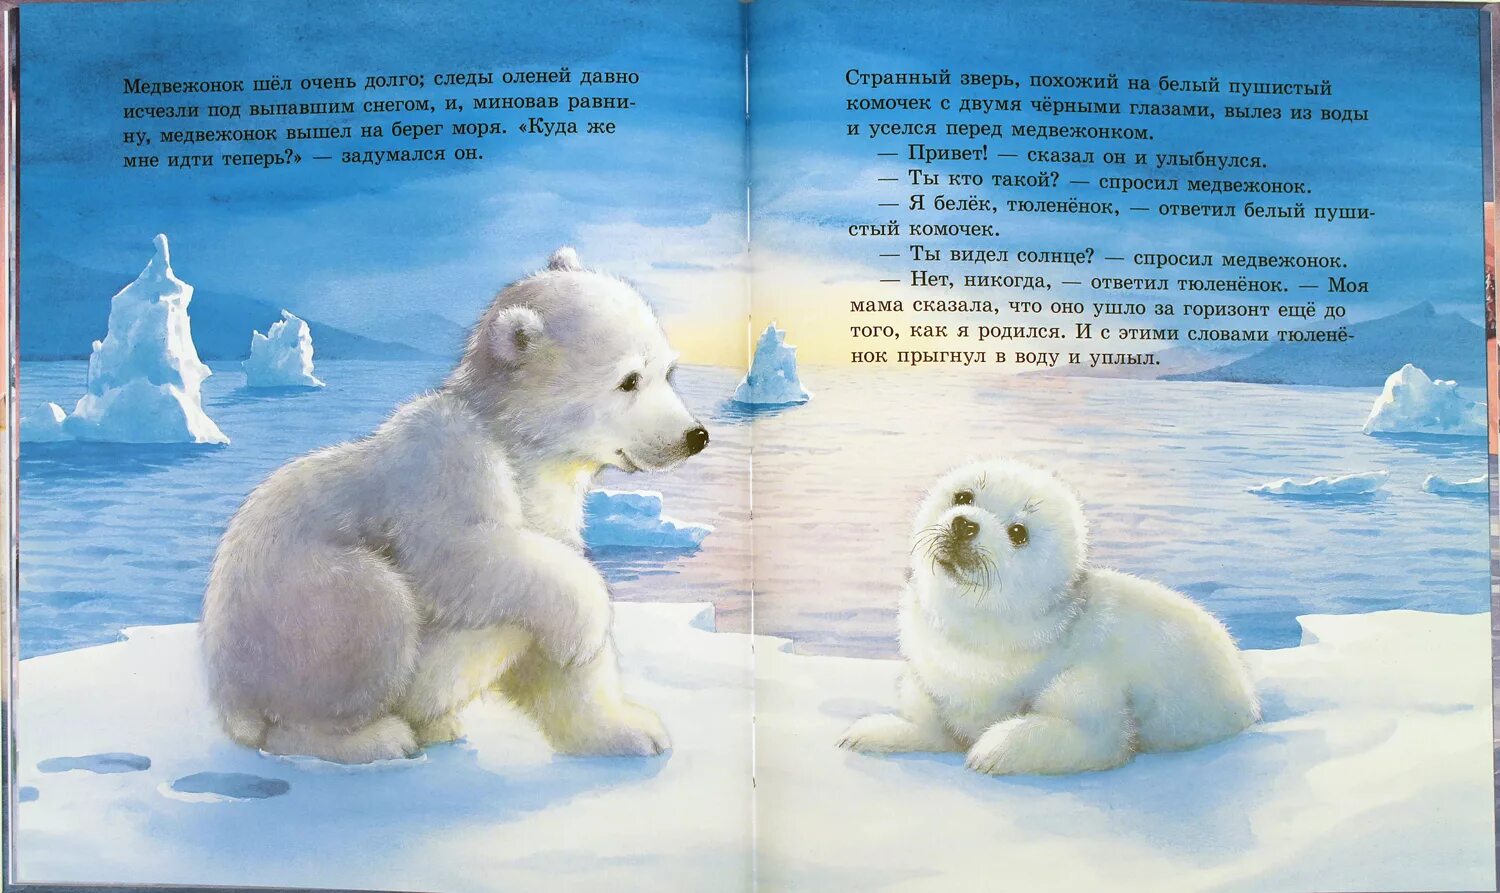 Читать про мишку. Сказка про белого медведя. Сказка про боевого медведя. Книги о белых медведях для детей. Сказка про белого медведя для детей.